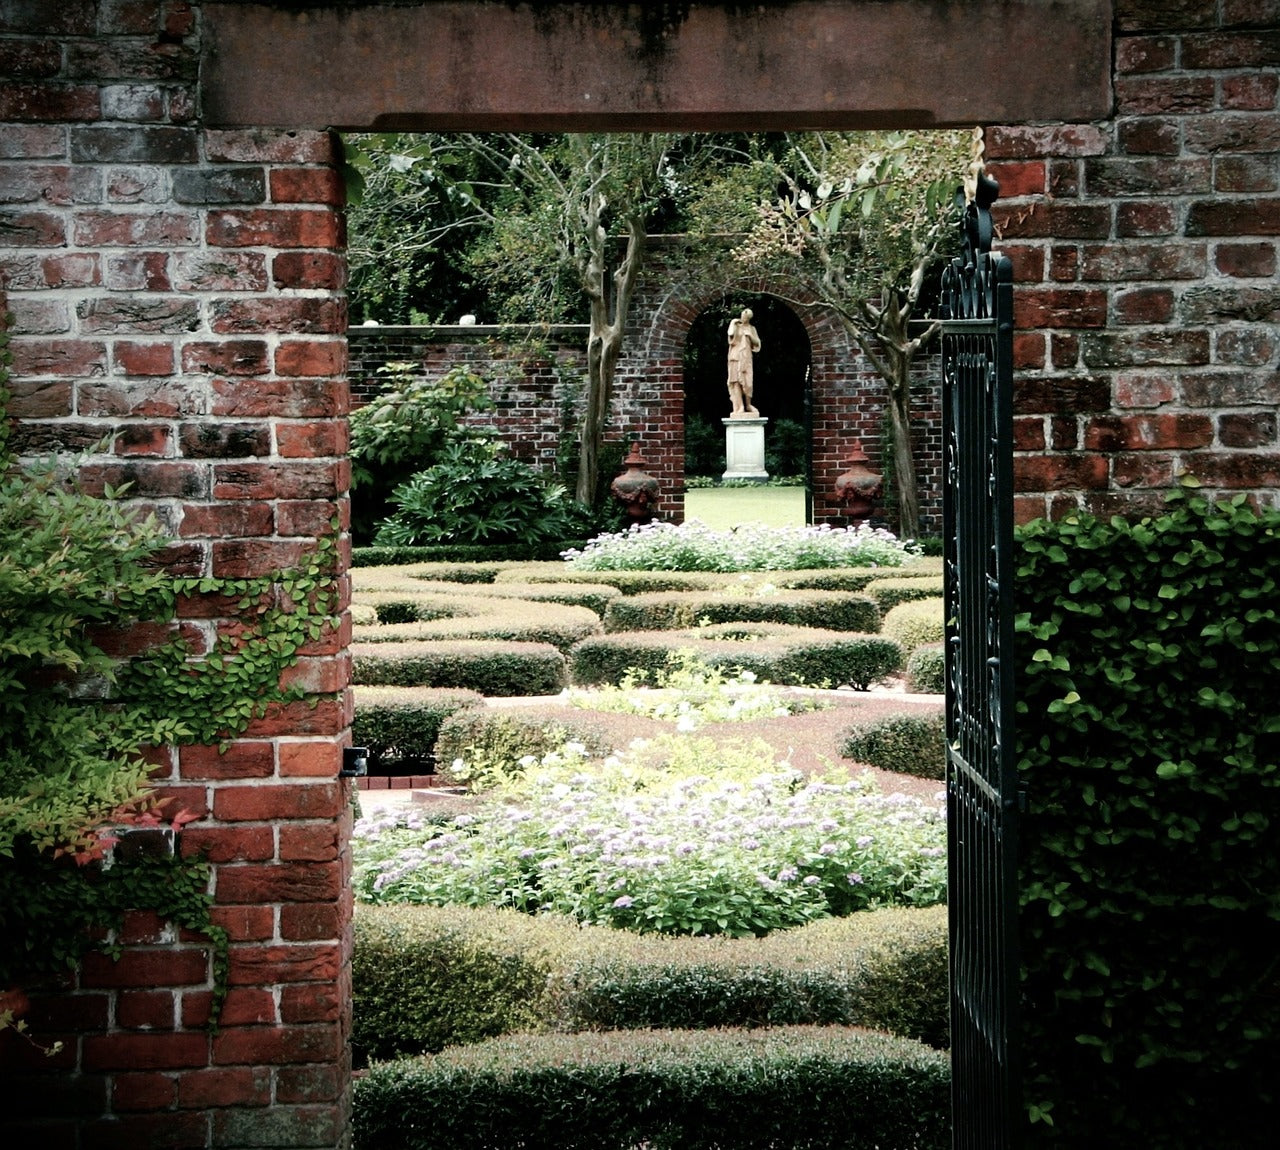 A beautiful sculpted garden view through an open doorway.